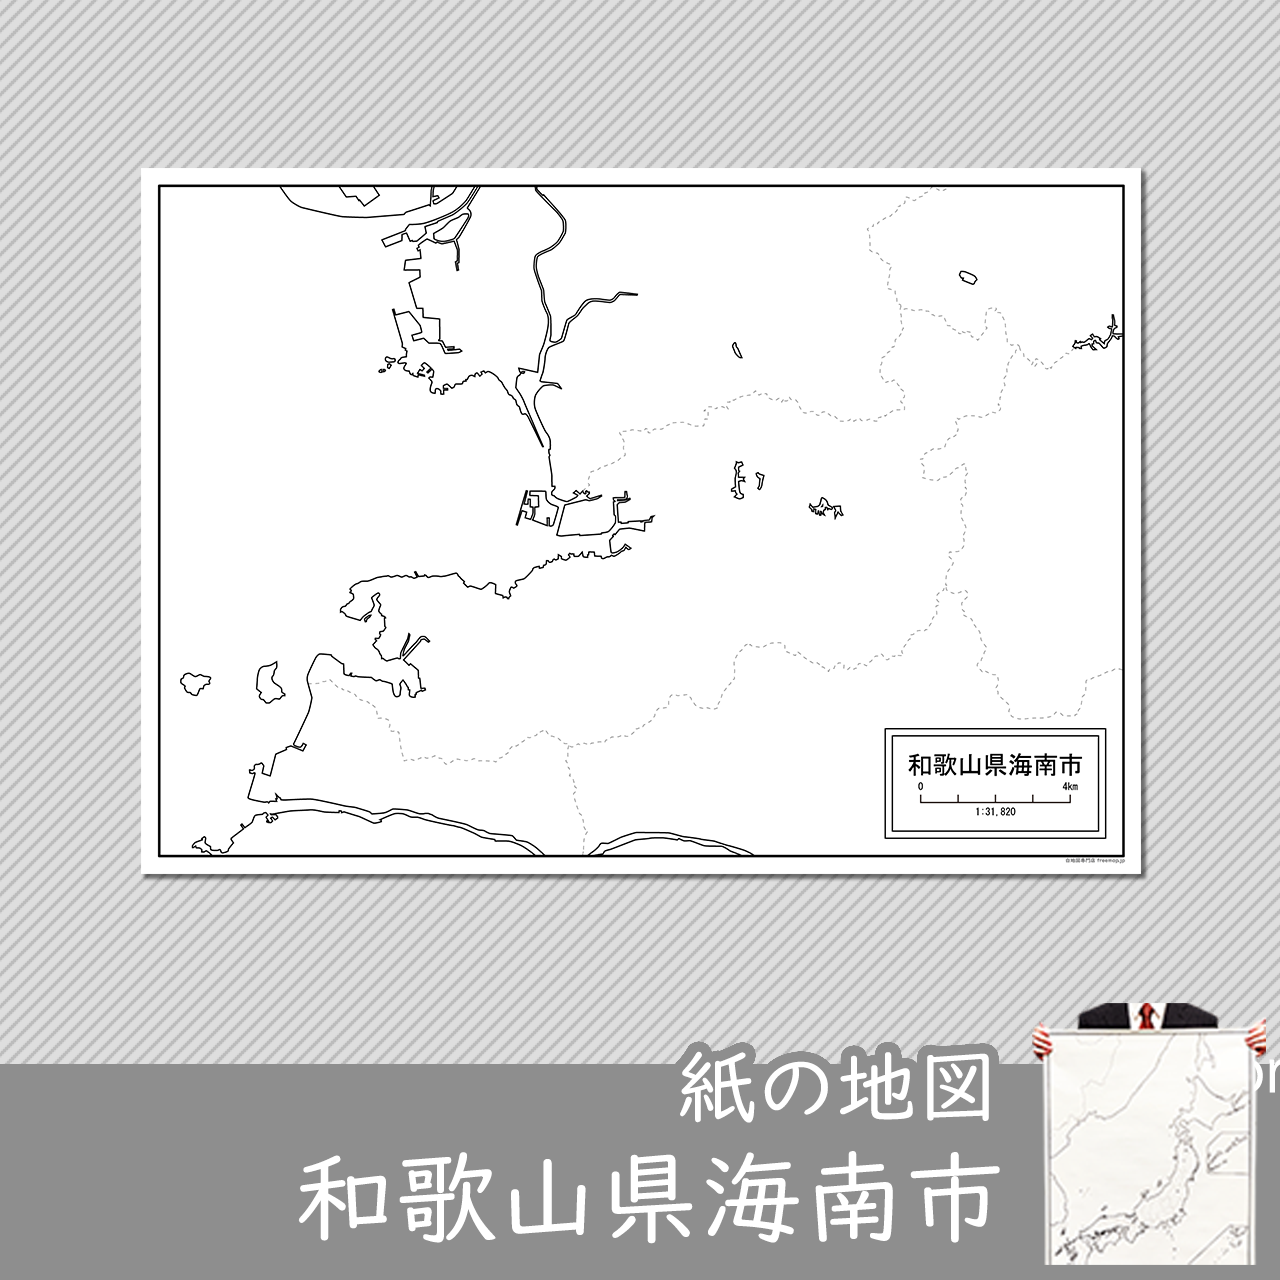 海南市の紙の白地図のサムネイル